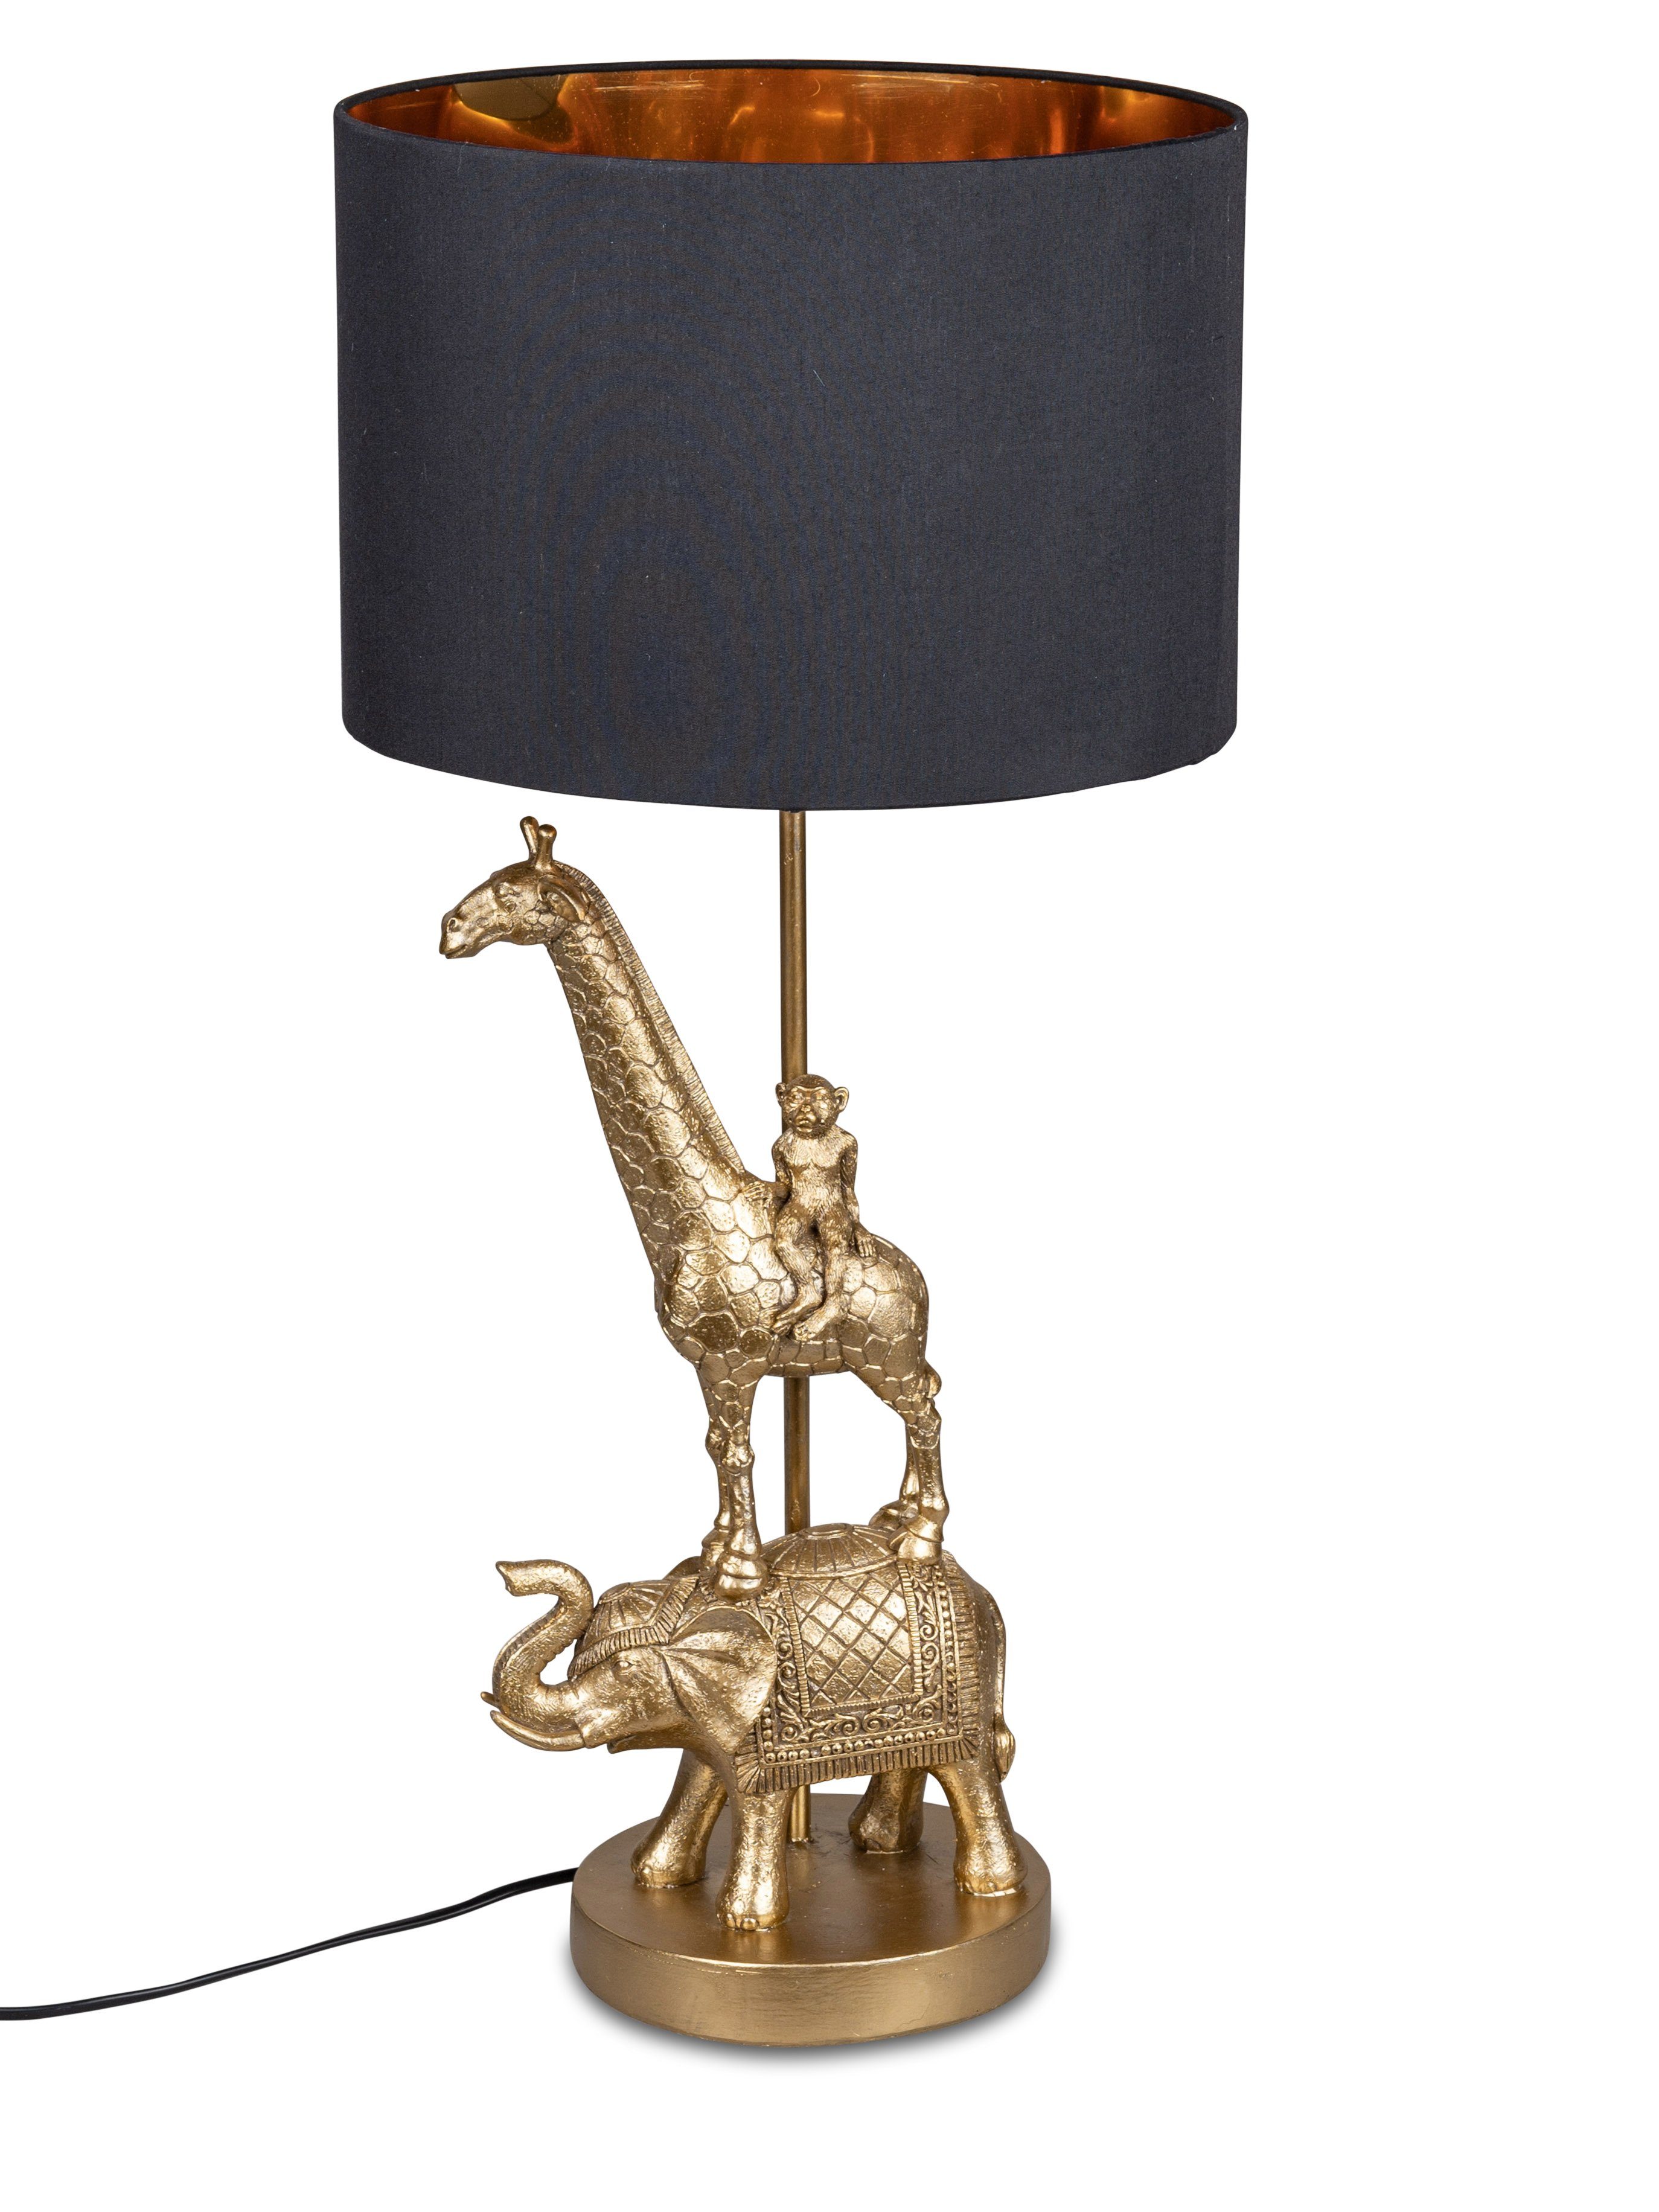 formano Schreibtischlampe Tier-Lampe 66 cm in Antik-Gold, handgefertigte Deko-Lampe, Kunststein, wechselbar, Dekolampe